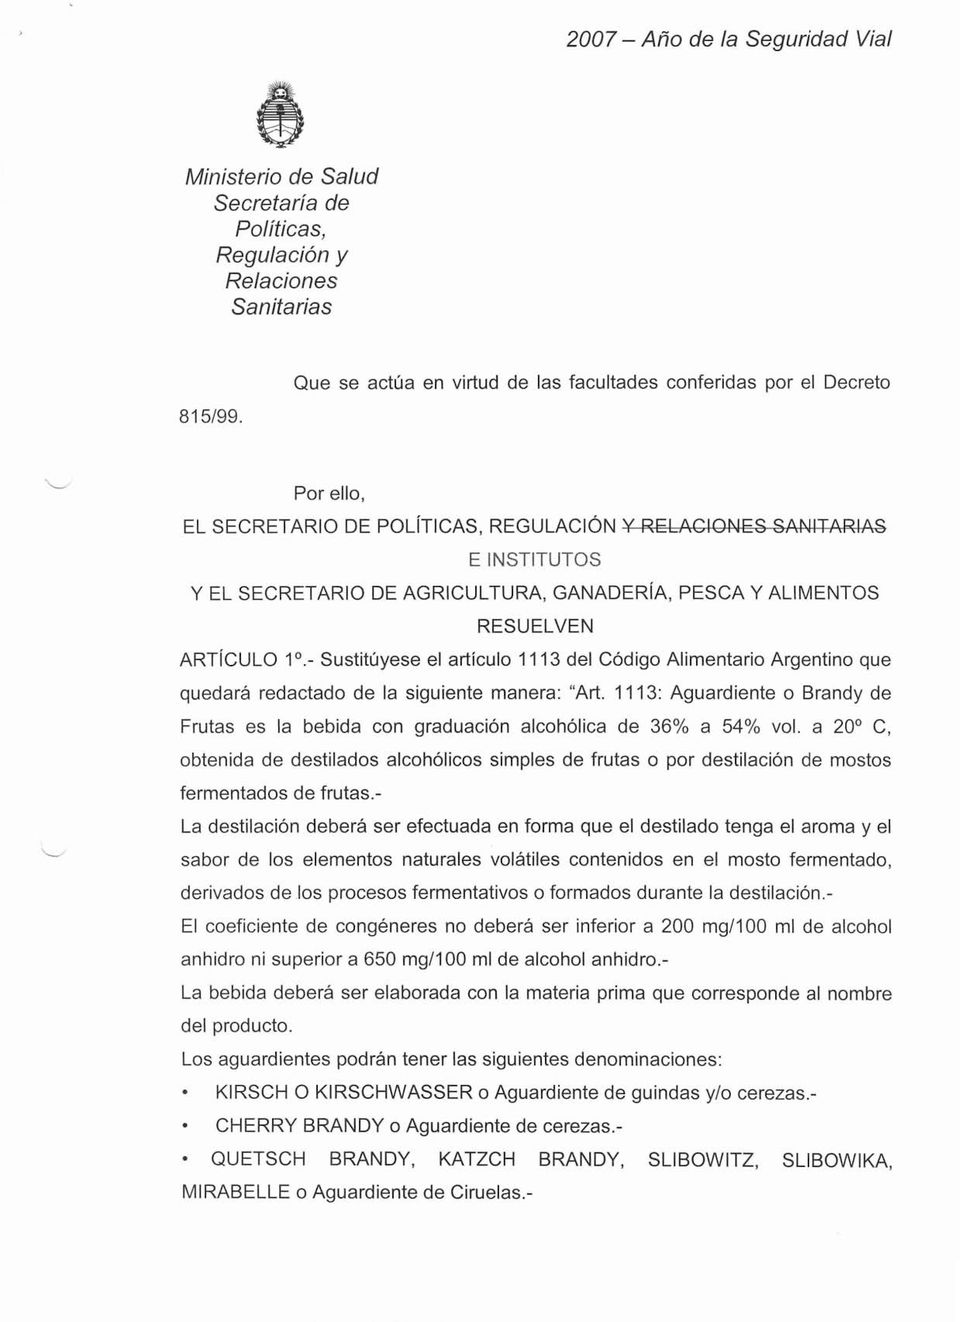 - Sustituyese el artículo 1113 del Código Alimentario Argentino que quedará redactado de la siguiente manera: "Art.